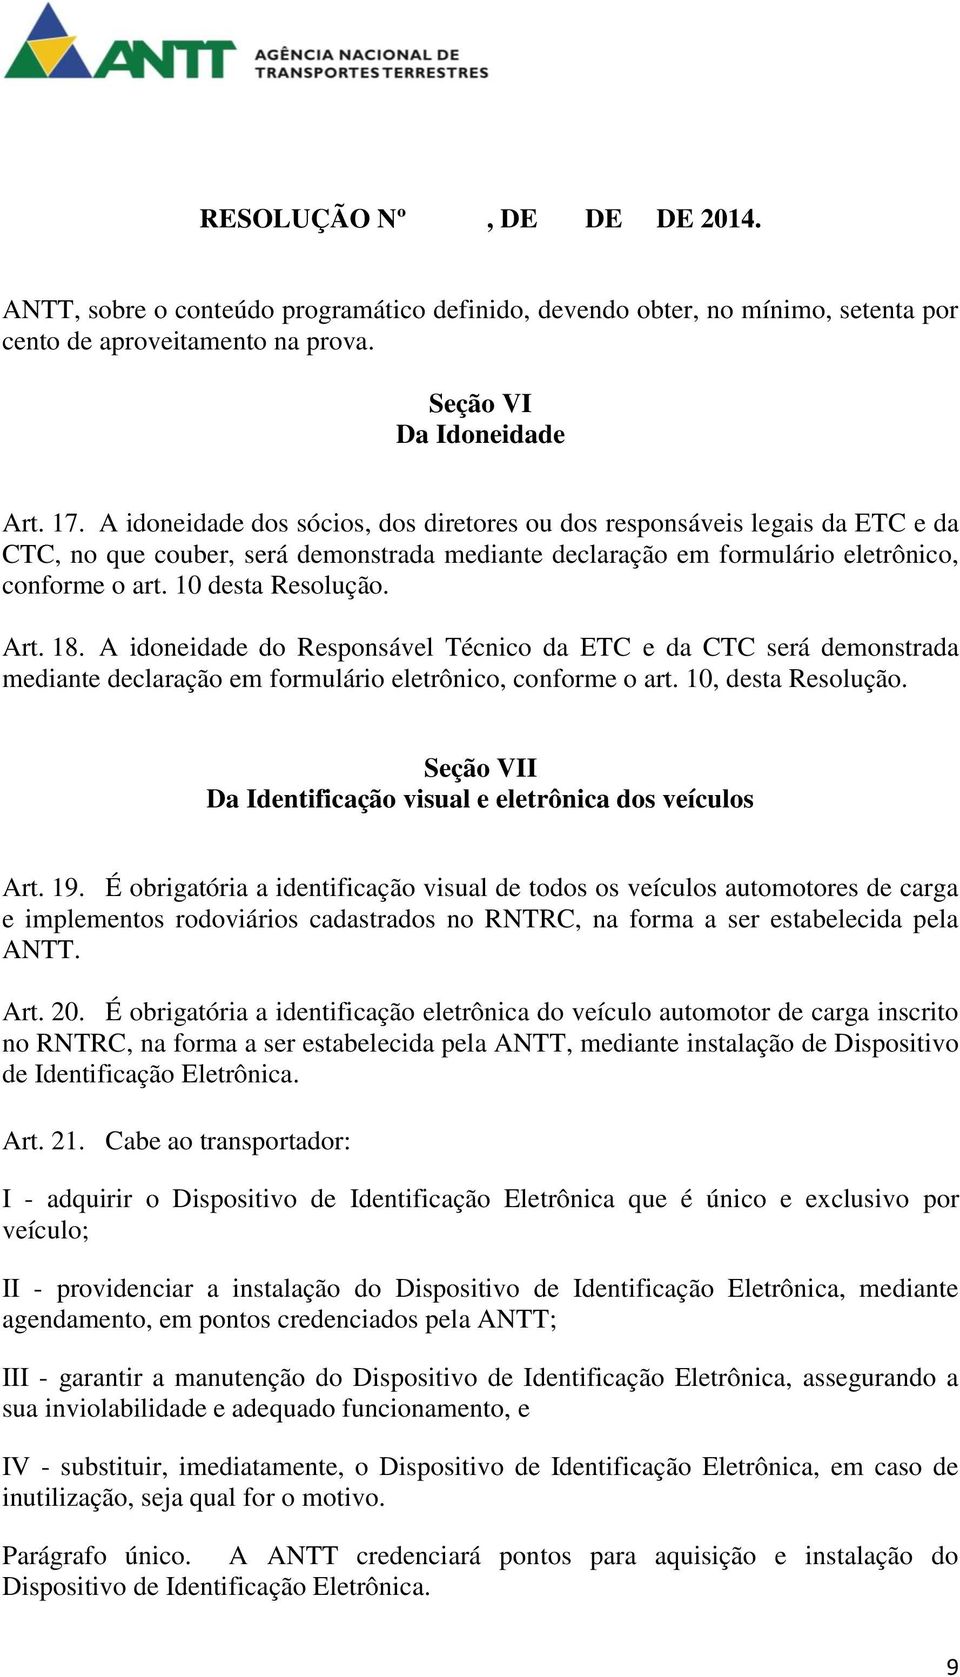 Art. 18. A idoneidade do Responsável Técnico da ETC e da CTC será demonstrada mediante declaração em formulário eletrônico, conforme o art. 10, desta Resolução.